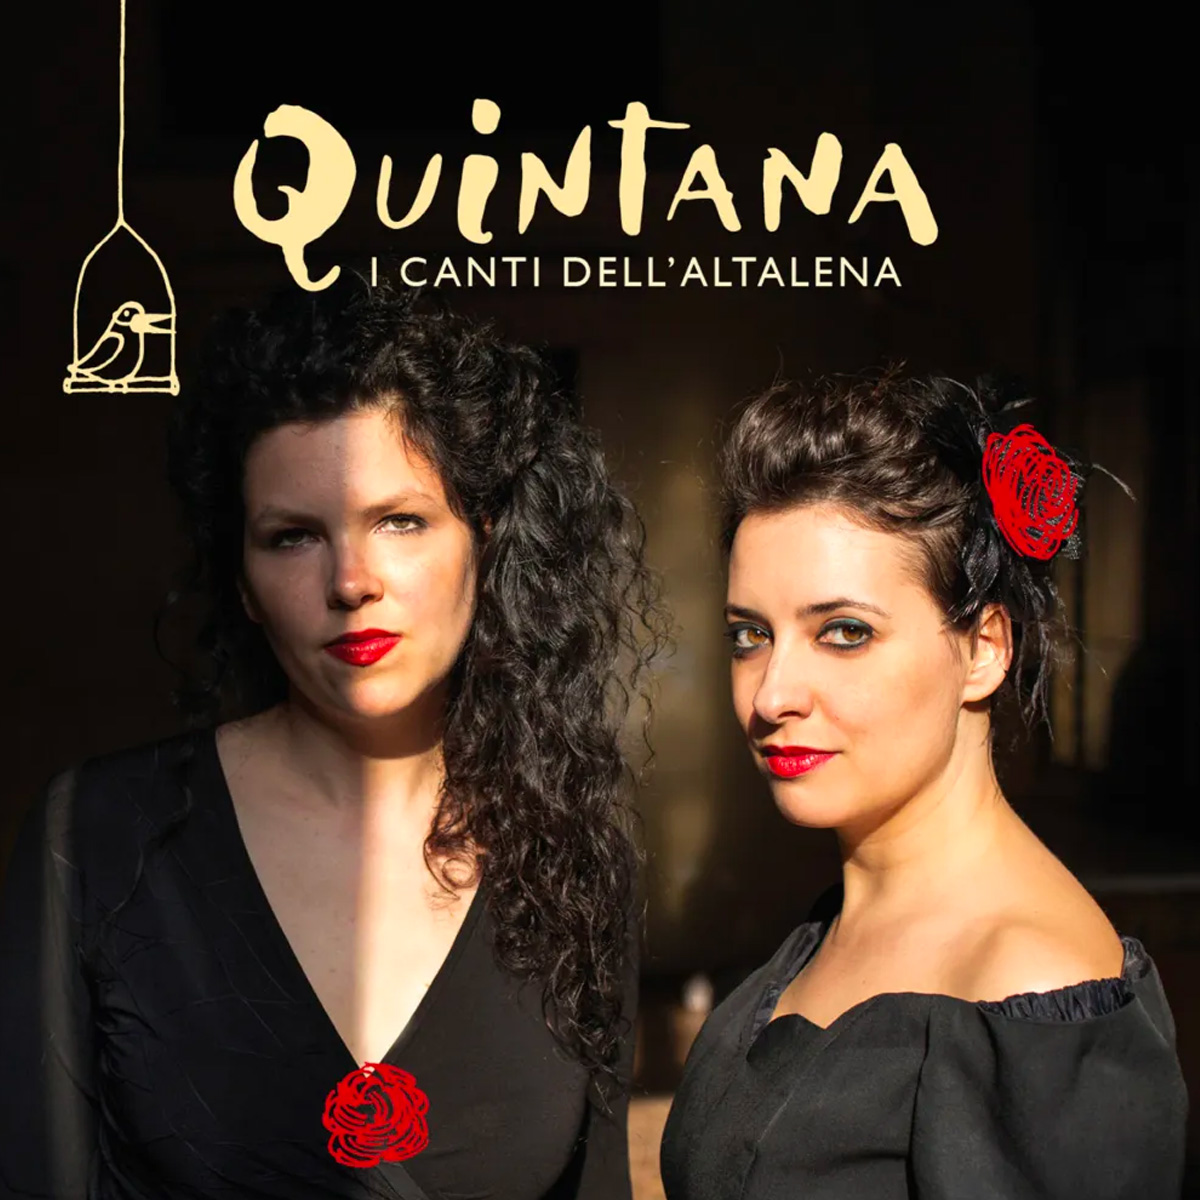 Discografia - I canti dell'altalena - Quintana